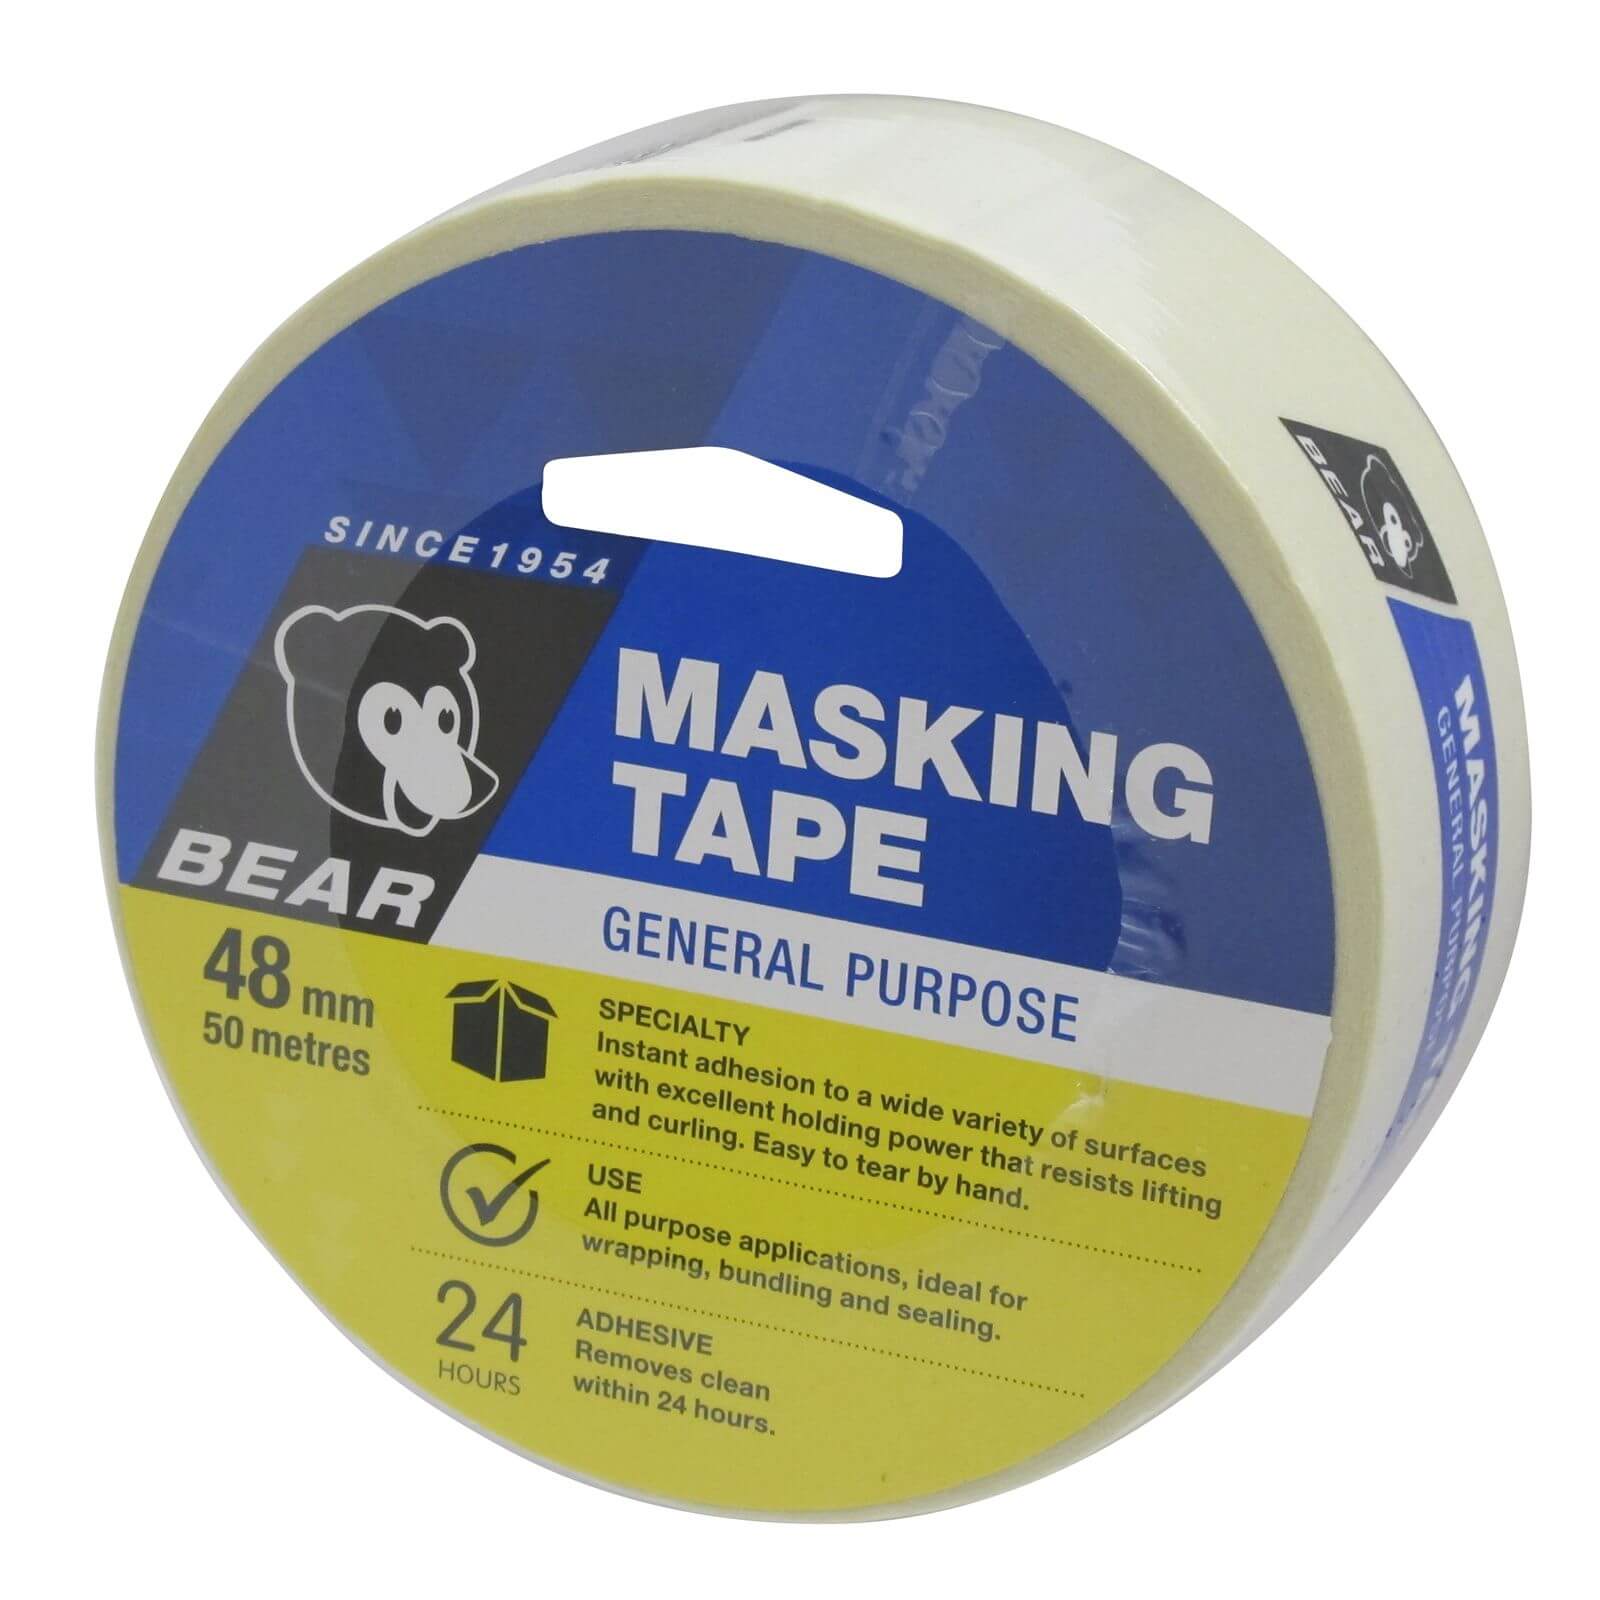 Bear 48mm x 50m General Purpose Masking Tape